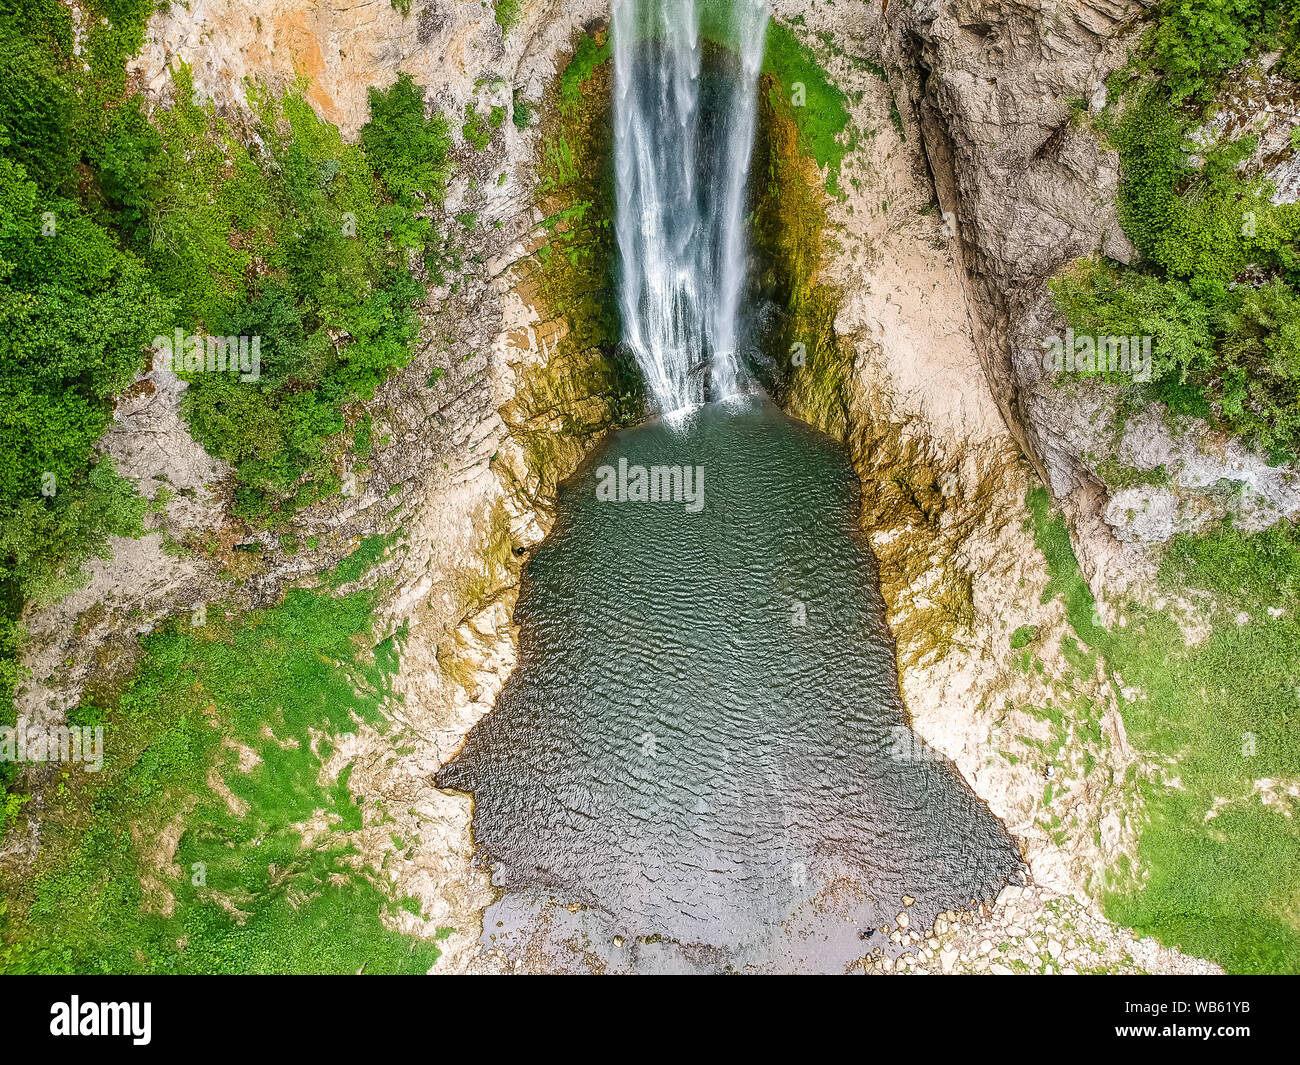 Bliha falls, de l'eau de l'Bliha tombe de 56 mètres de haut - falaise cascade est Blihe en Bosnie-Herzégovine. Banque D'Images